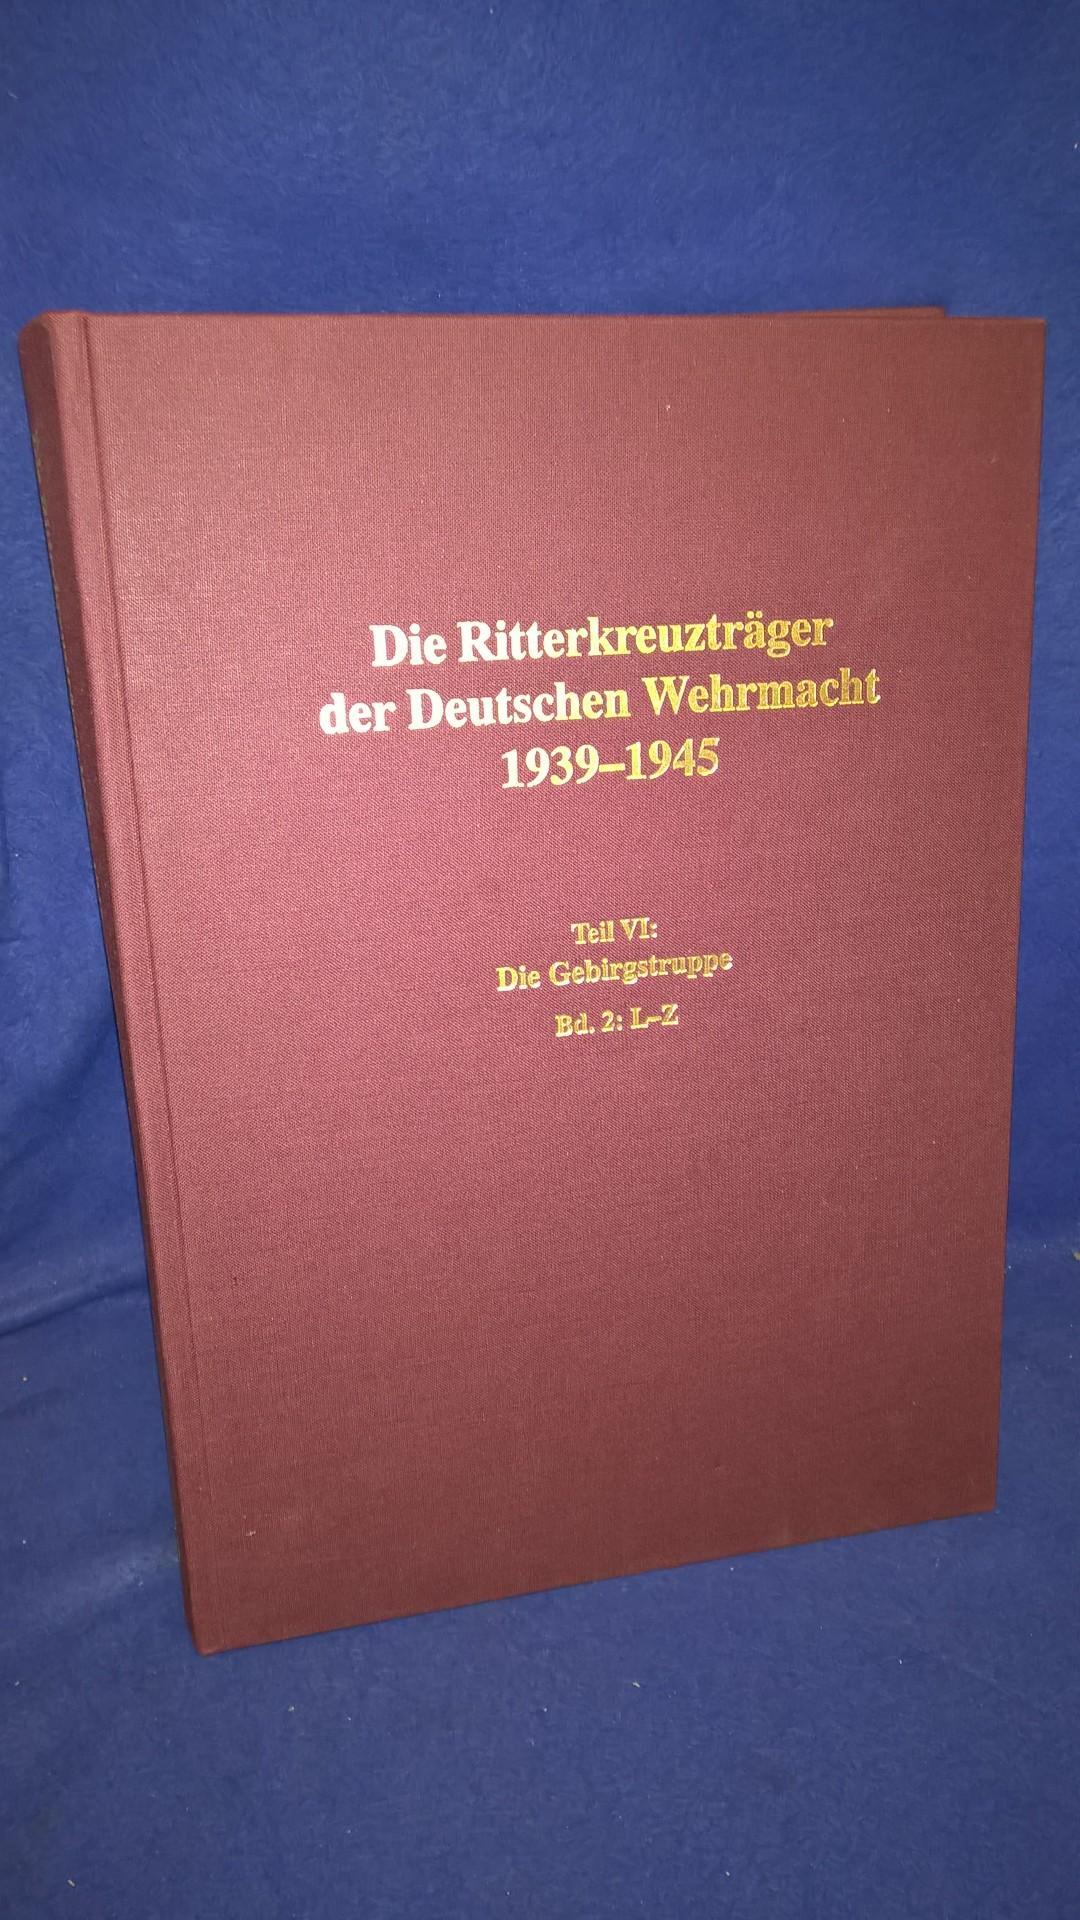 Die Ritterkreuzträger der Deutschen Wehrmacht 1939 - 1945 - Teil VI: Die Gebirgstruppe, Band 2: L-Z.